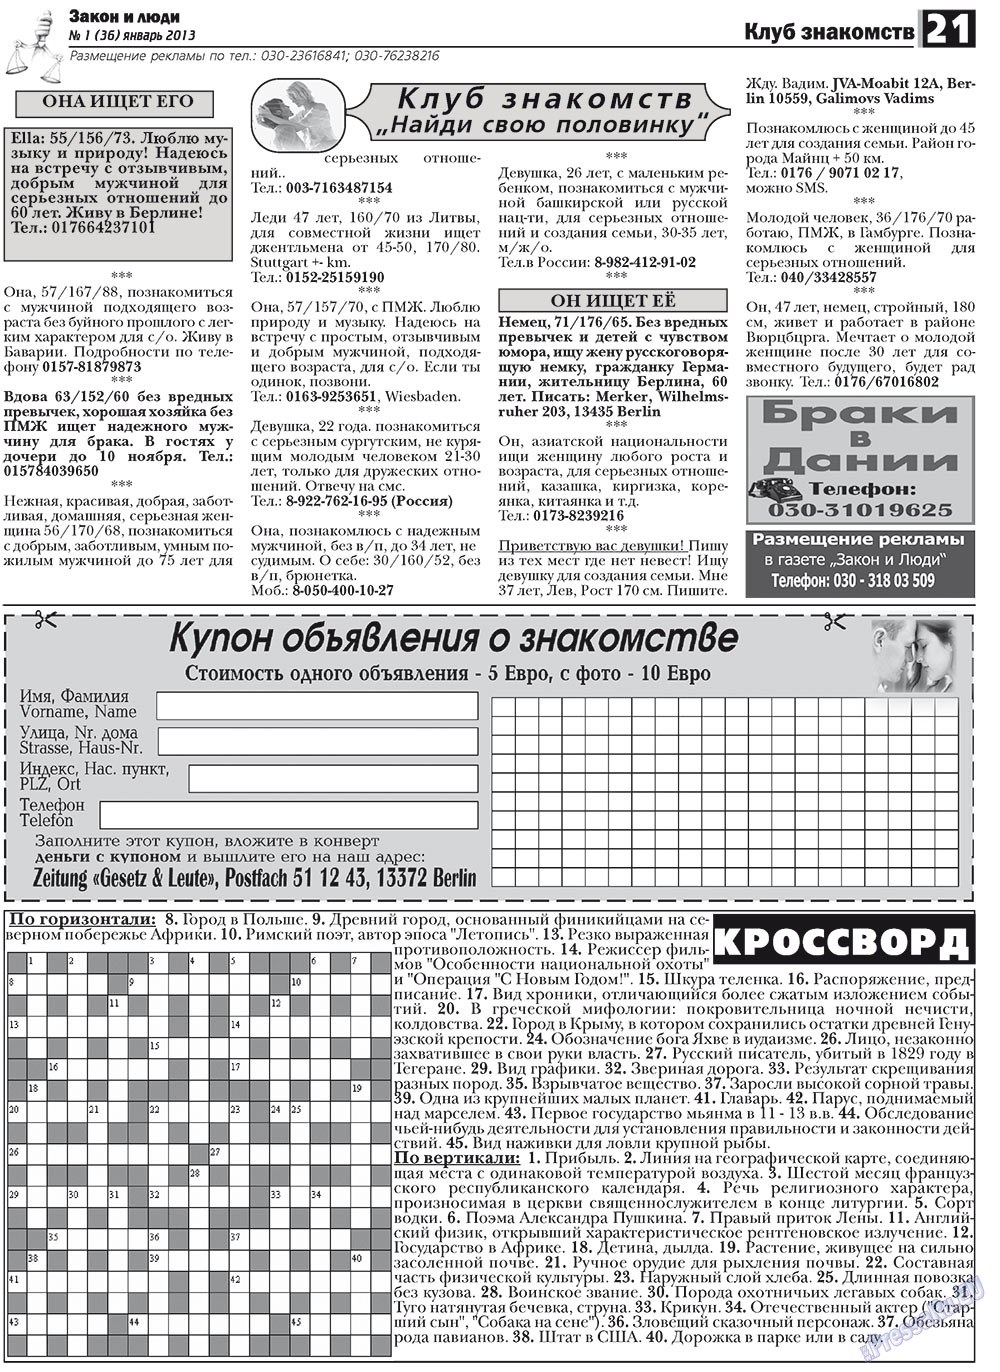 Закон и люди, газета. 2013 №1 стр.21